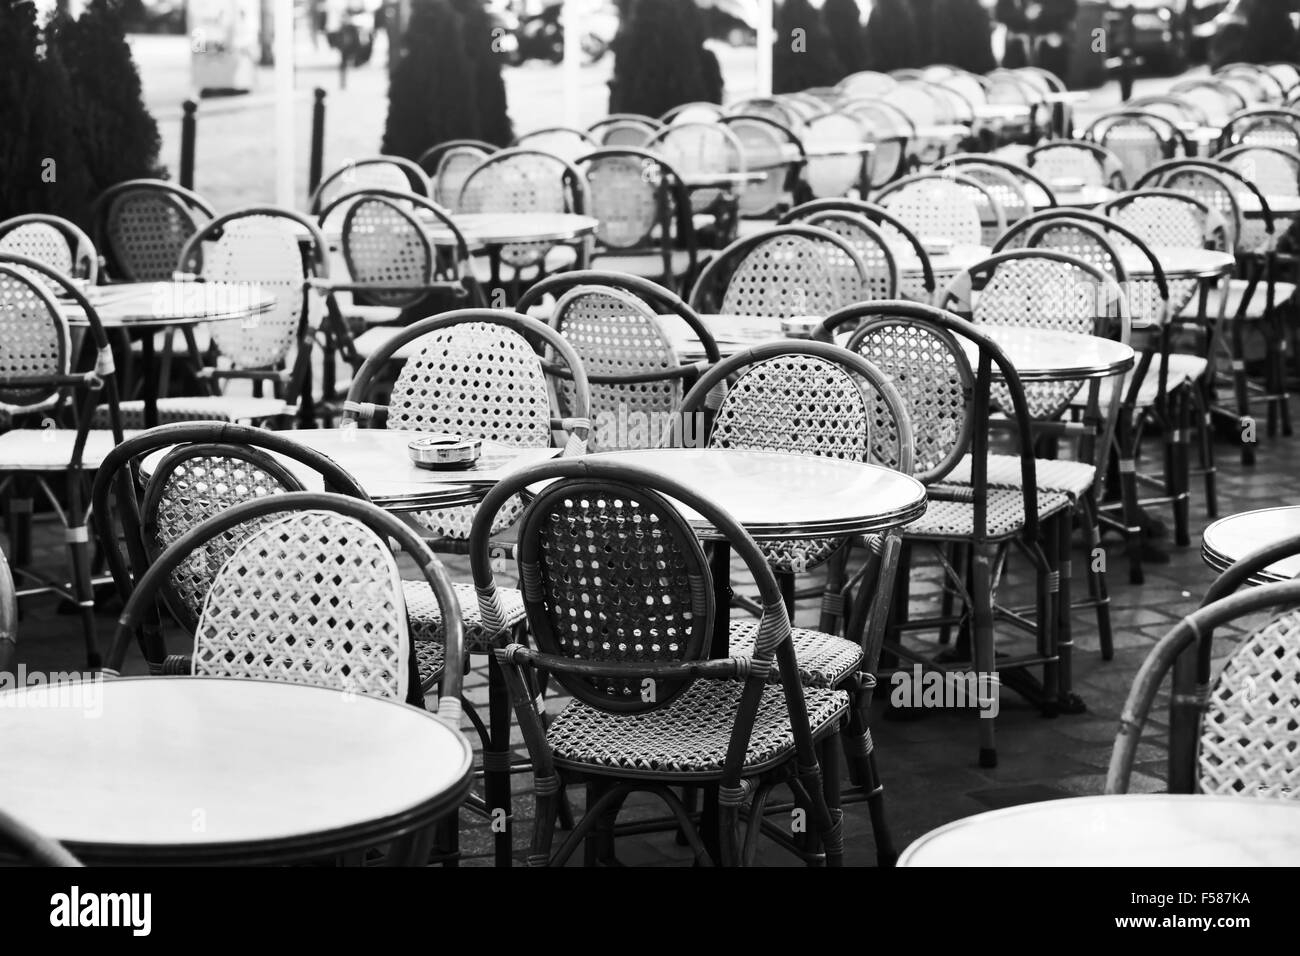 Vintage Straßencafé in Paris, schwarz / weiß Foto von Strandkörben und Tabellen Stockfoto